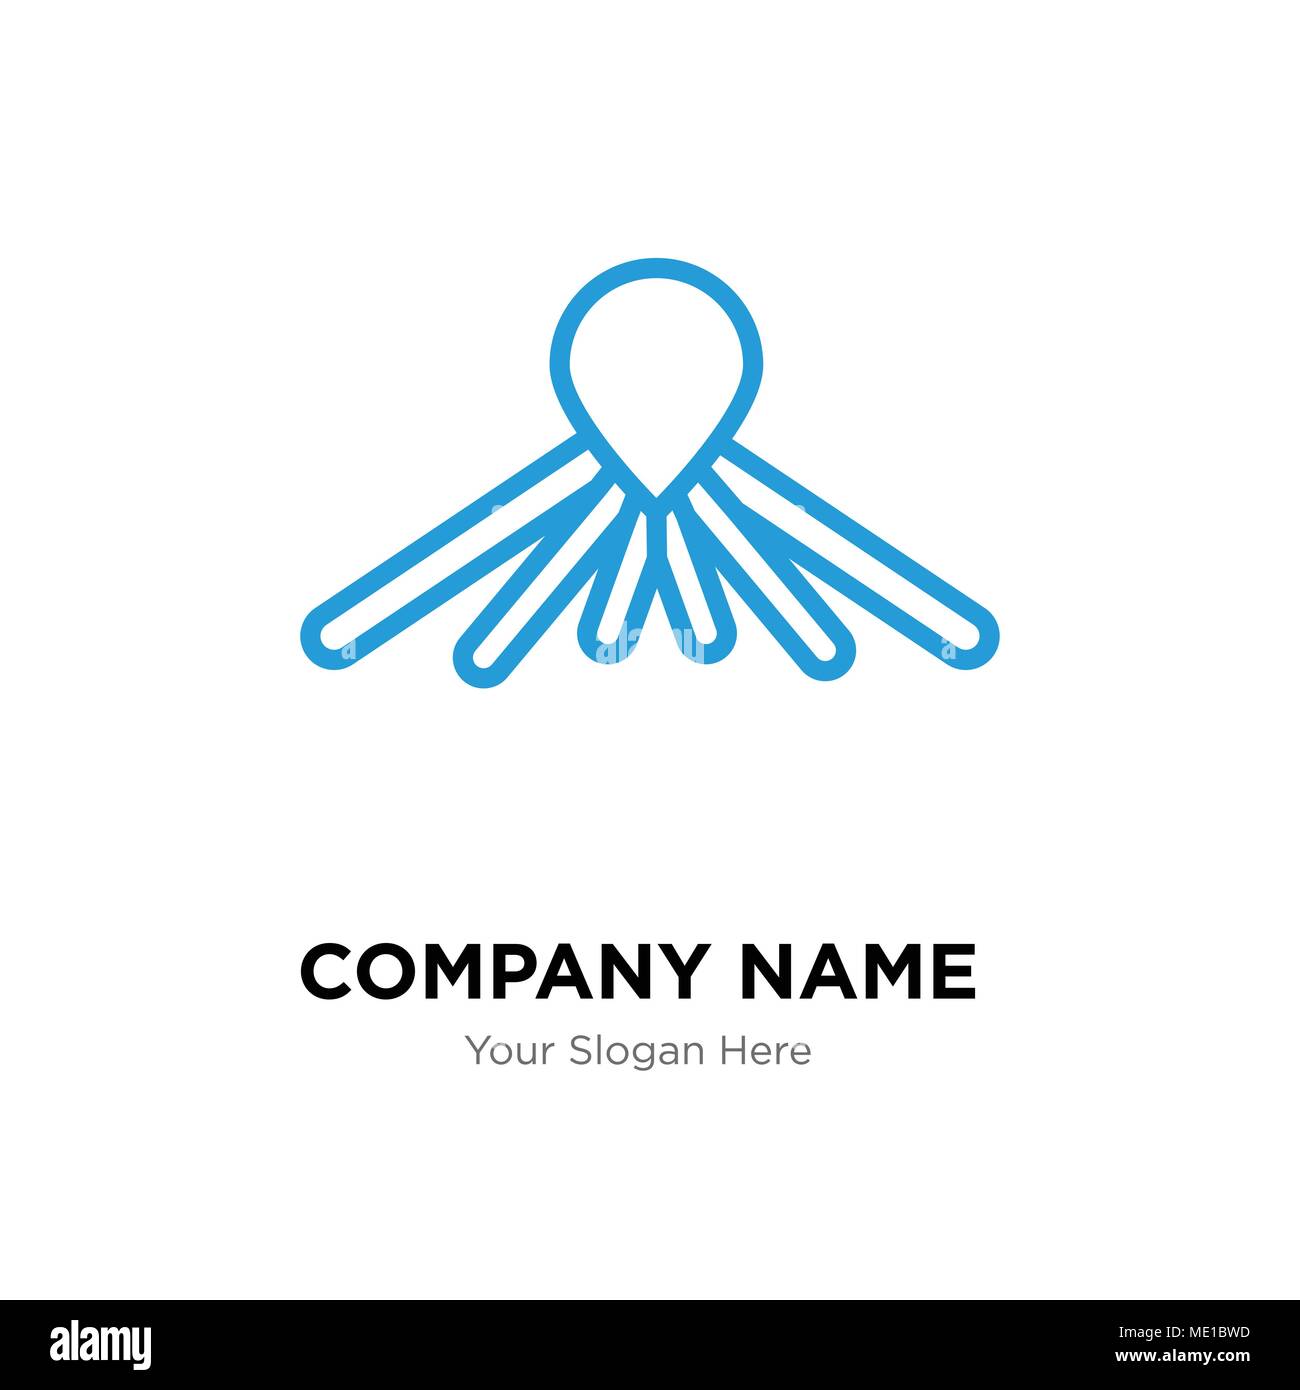 Balloon dog company logo design template, Business corporate vector icon Stock Vector